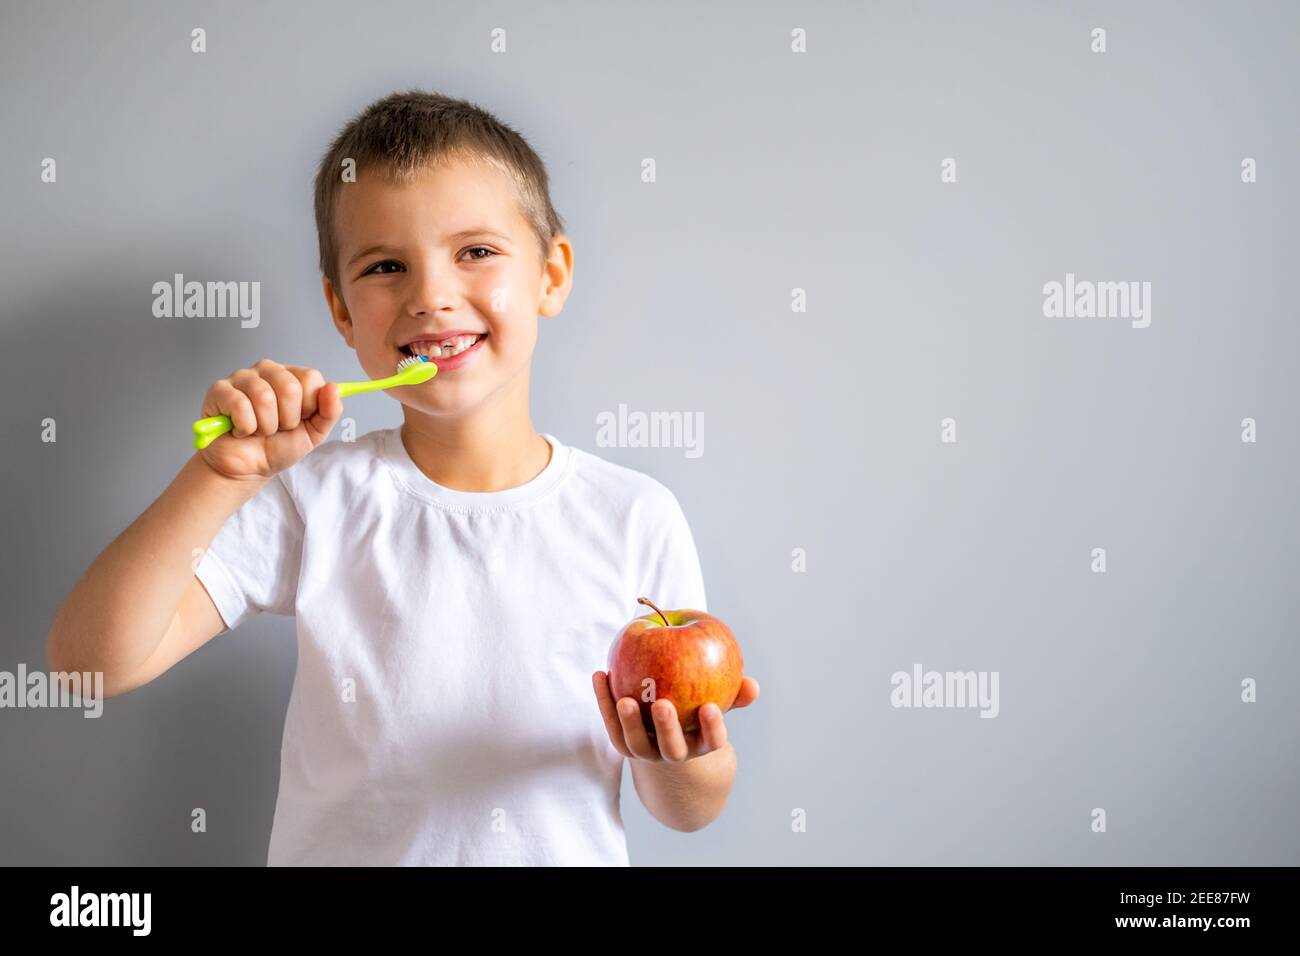 Junge ohne Milch Oberzahn in weißem T-Shirt lächelnd und hält einen Apfel und eine Zahnbürste in den Händen auf dem grauen Hintergrund. Stockfoto